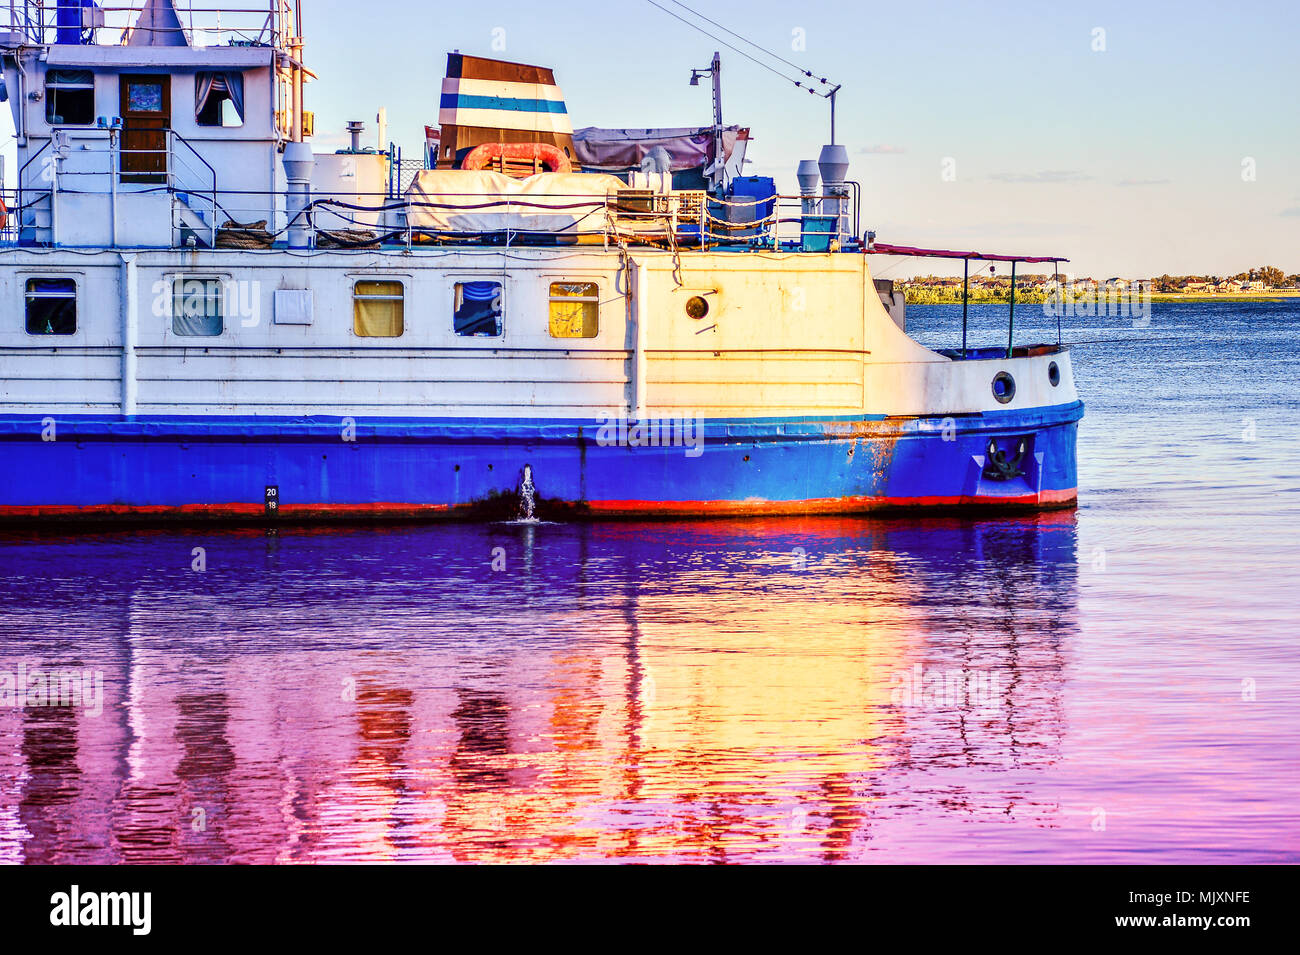 Une croisière navire touristique se reflète dans l'eau à l'aube Banque D'Images